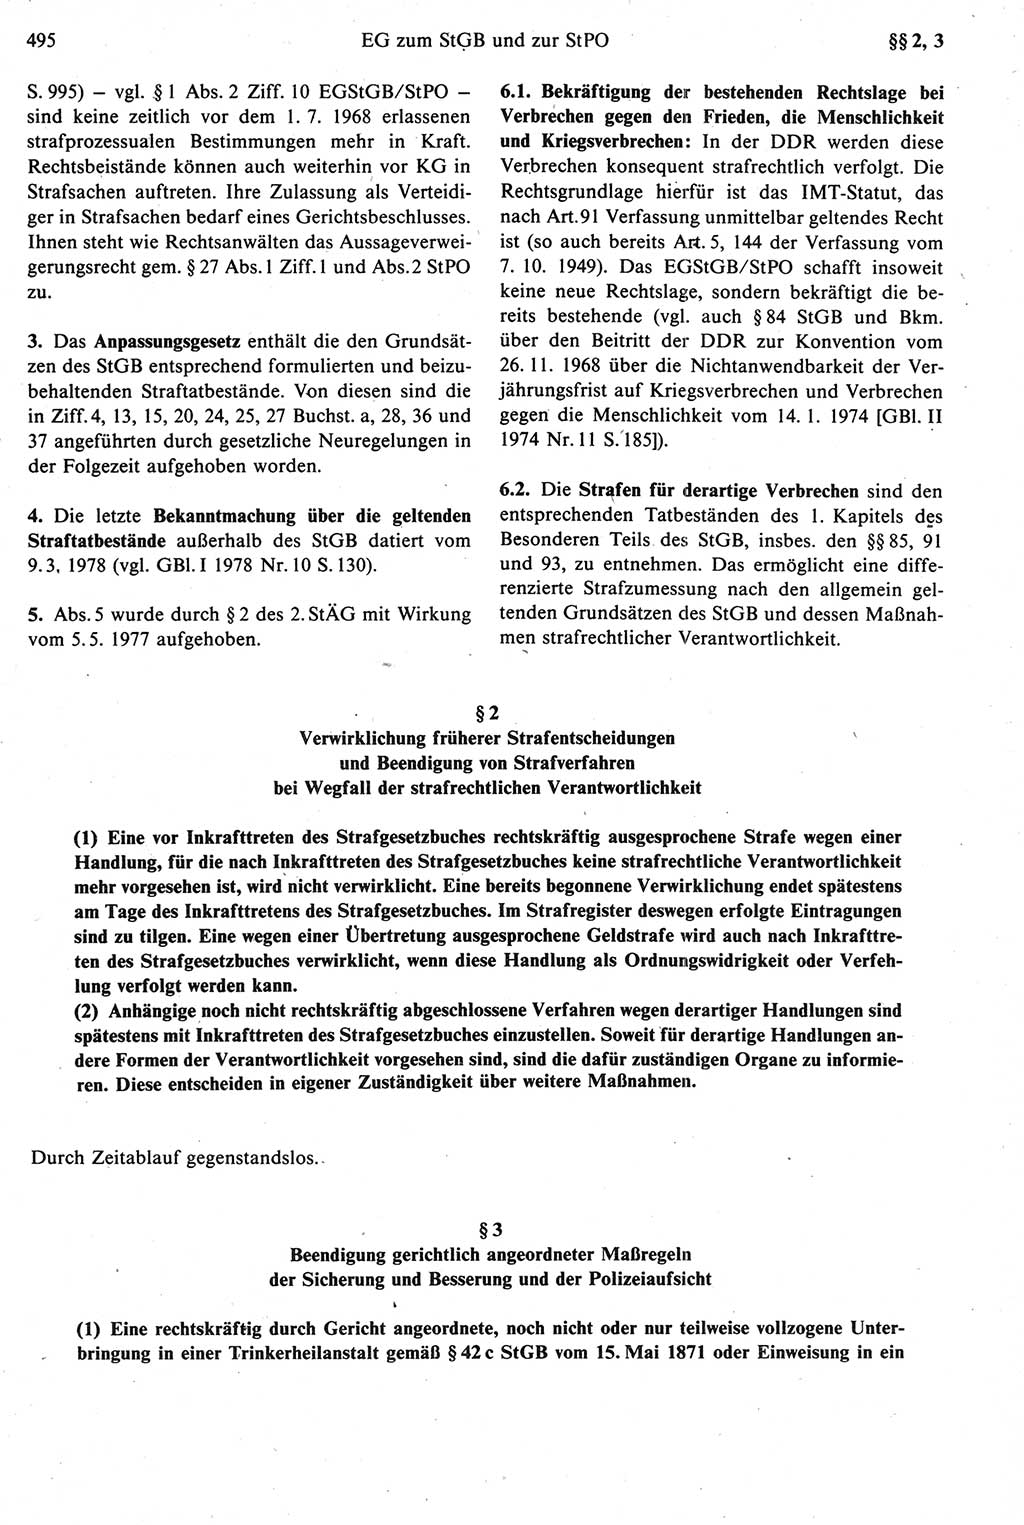 Strafprozeßrecht der DDR [Deutsche Demokratische Republik], Kommentar zur Strafprozeßordnung (StPO) 1987, Seite 495 (Strafprozeßr. DDR Komm. StPO 1987, S. 495)